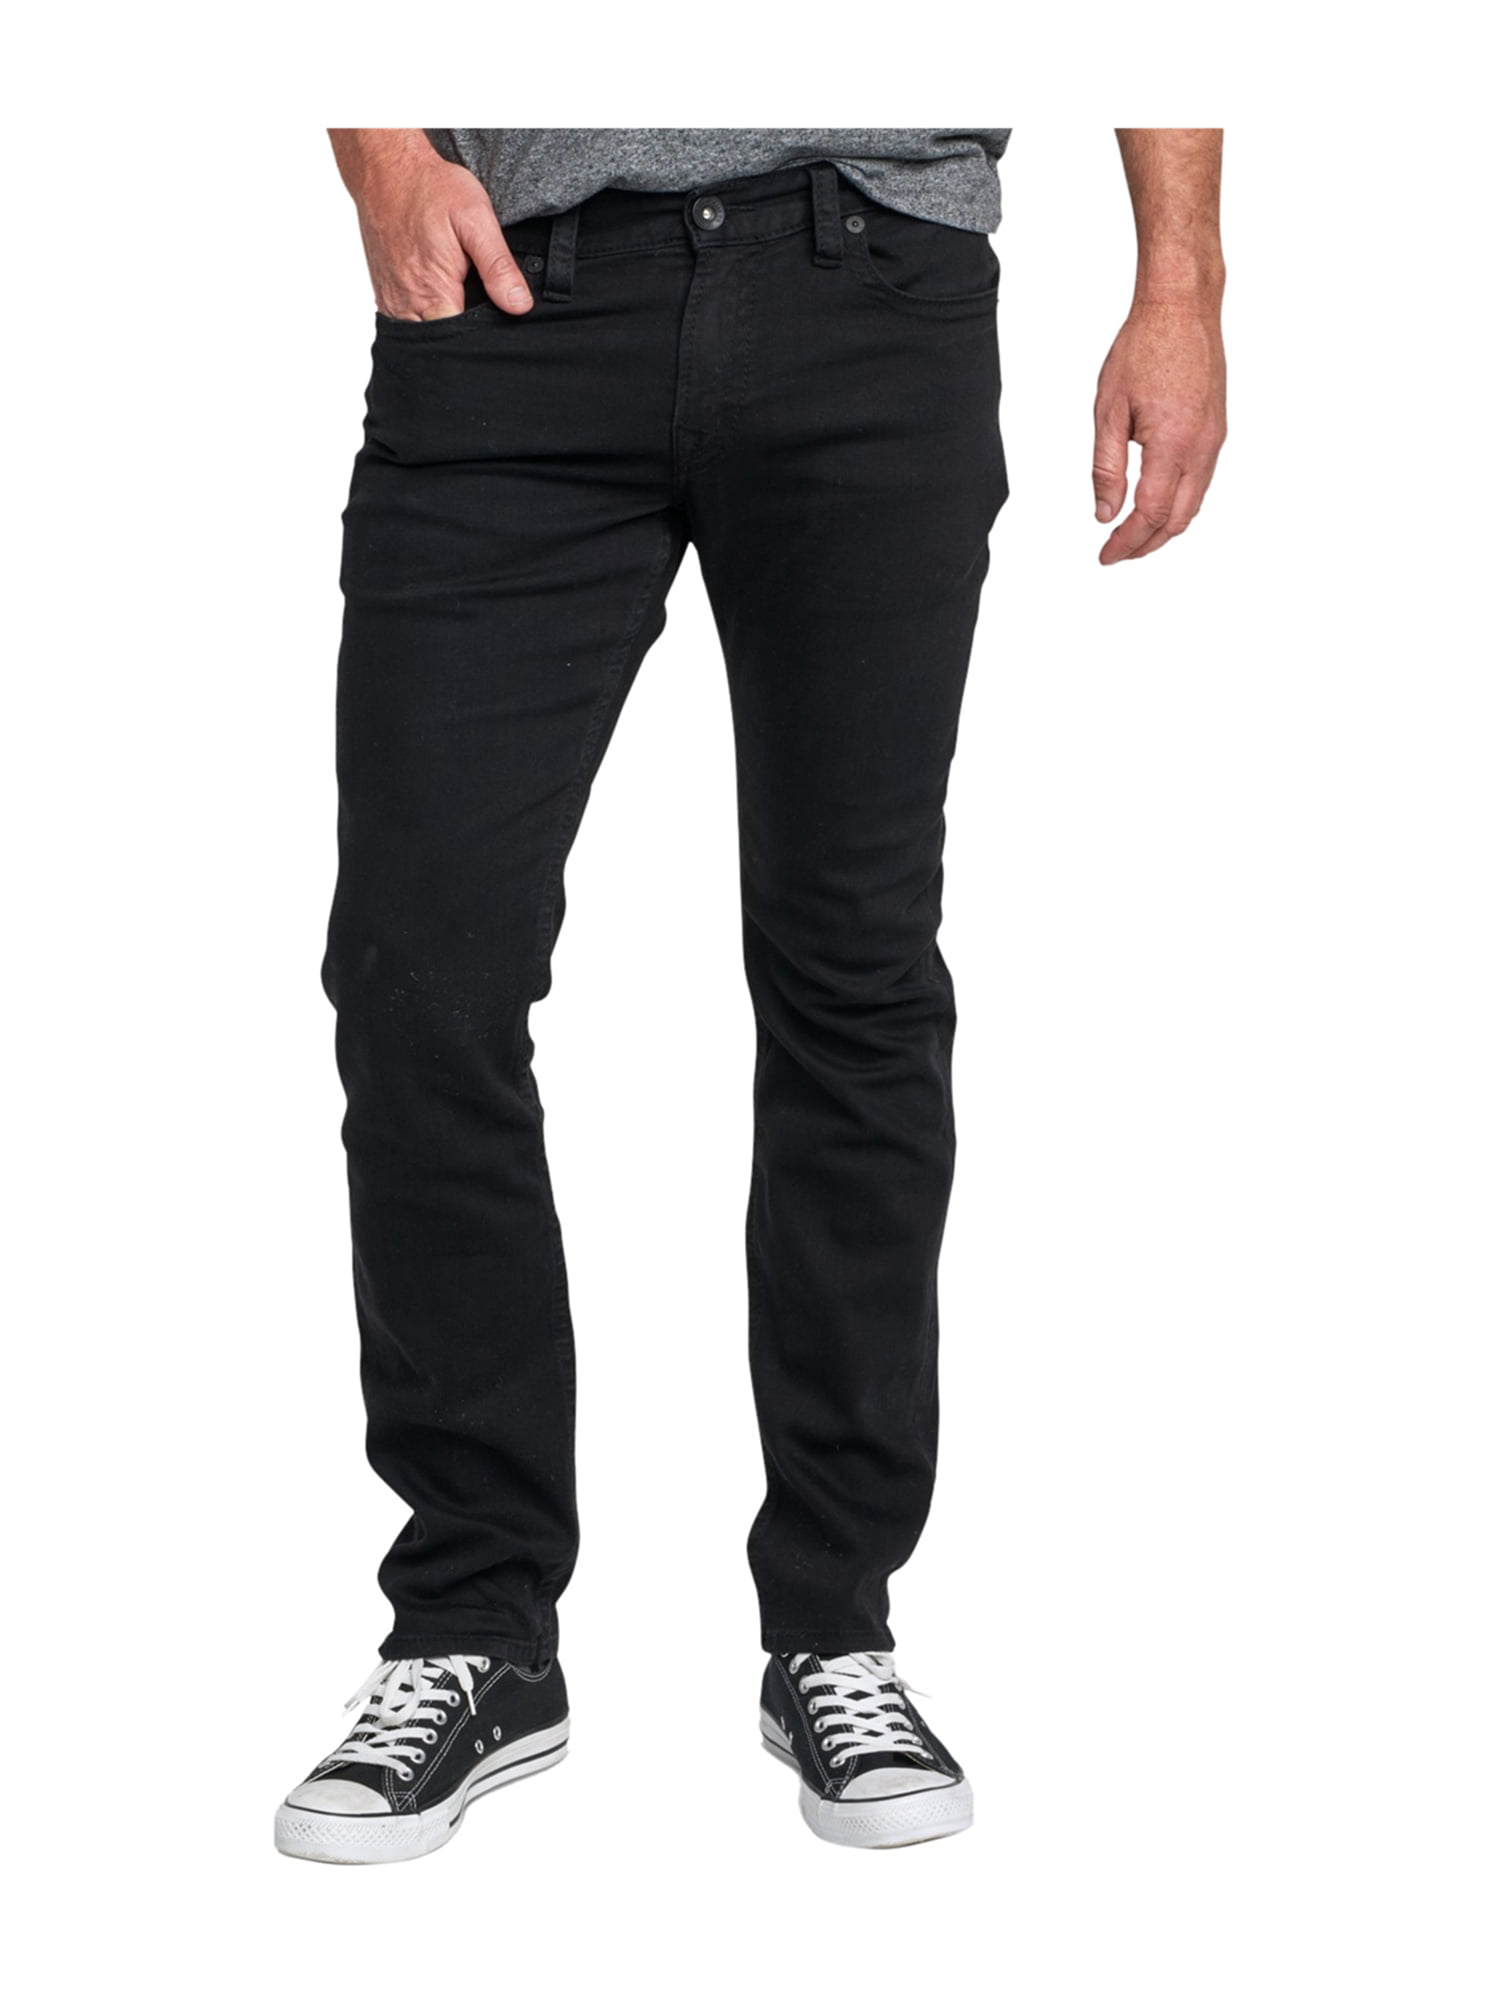 NWT Silver Jeans mens 34 X 32 Konrad slim fit stretch dark wash big stitch jeans